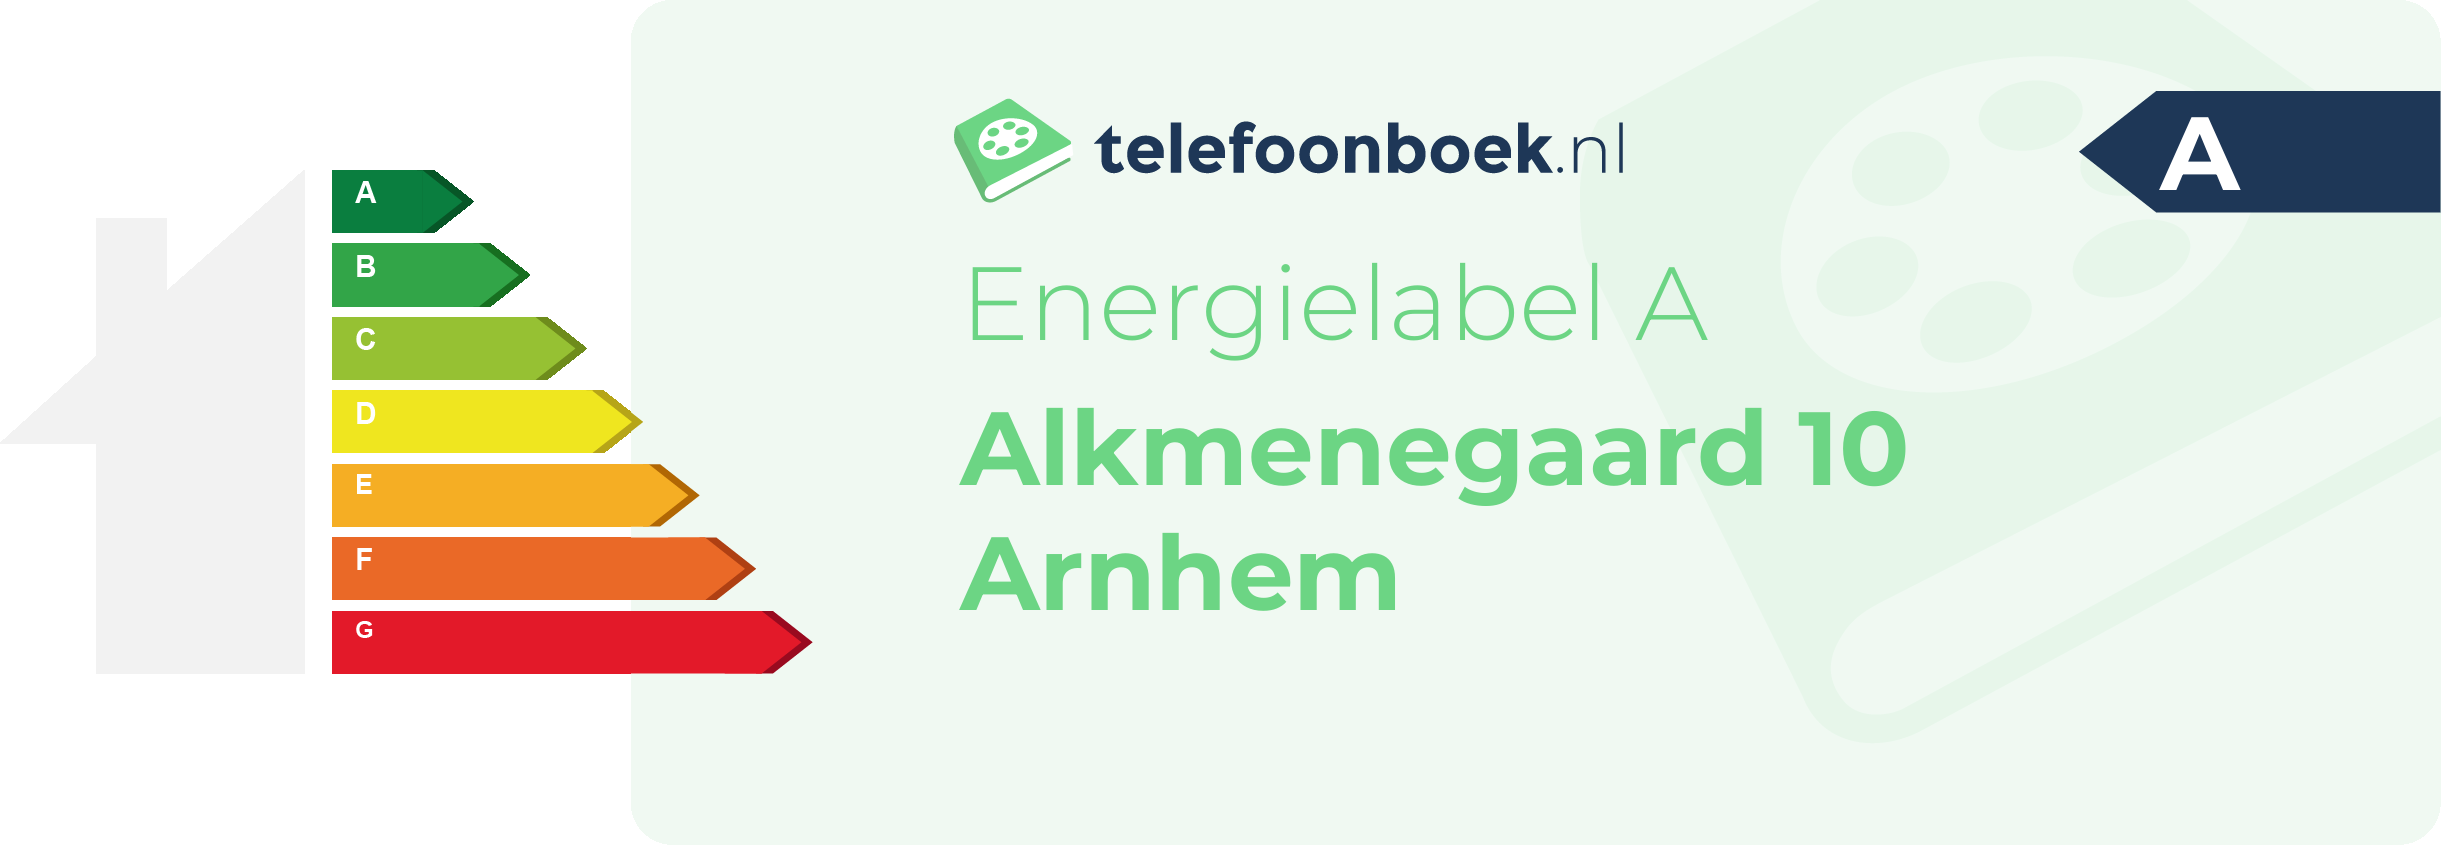 Energielabel Alkmenegaard 10 Arnhem